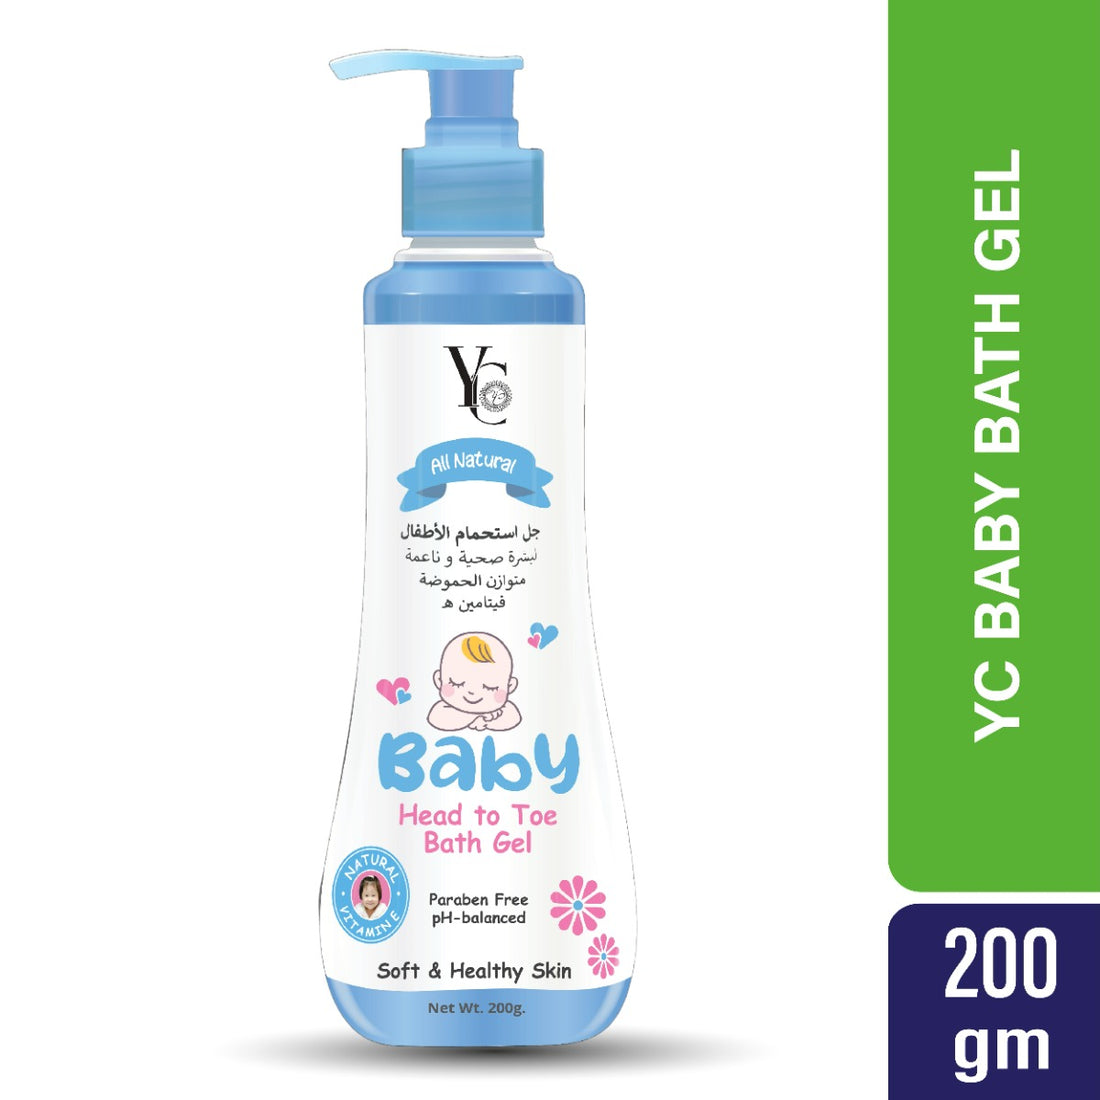 YC Baby Head To Toe Bath Gel (200gm)